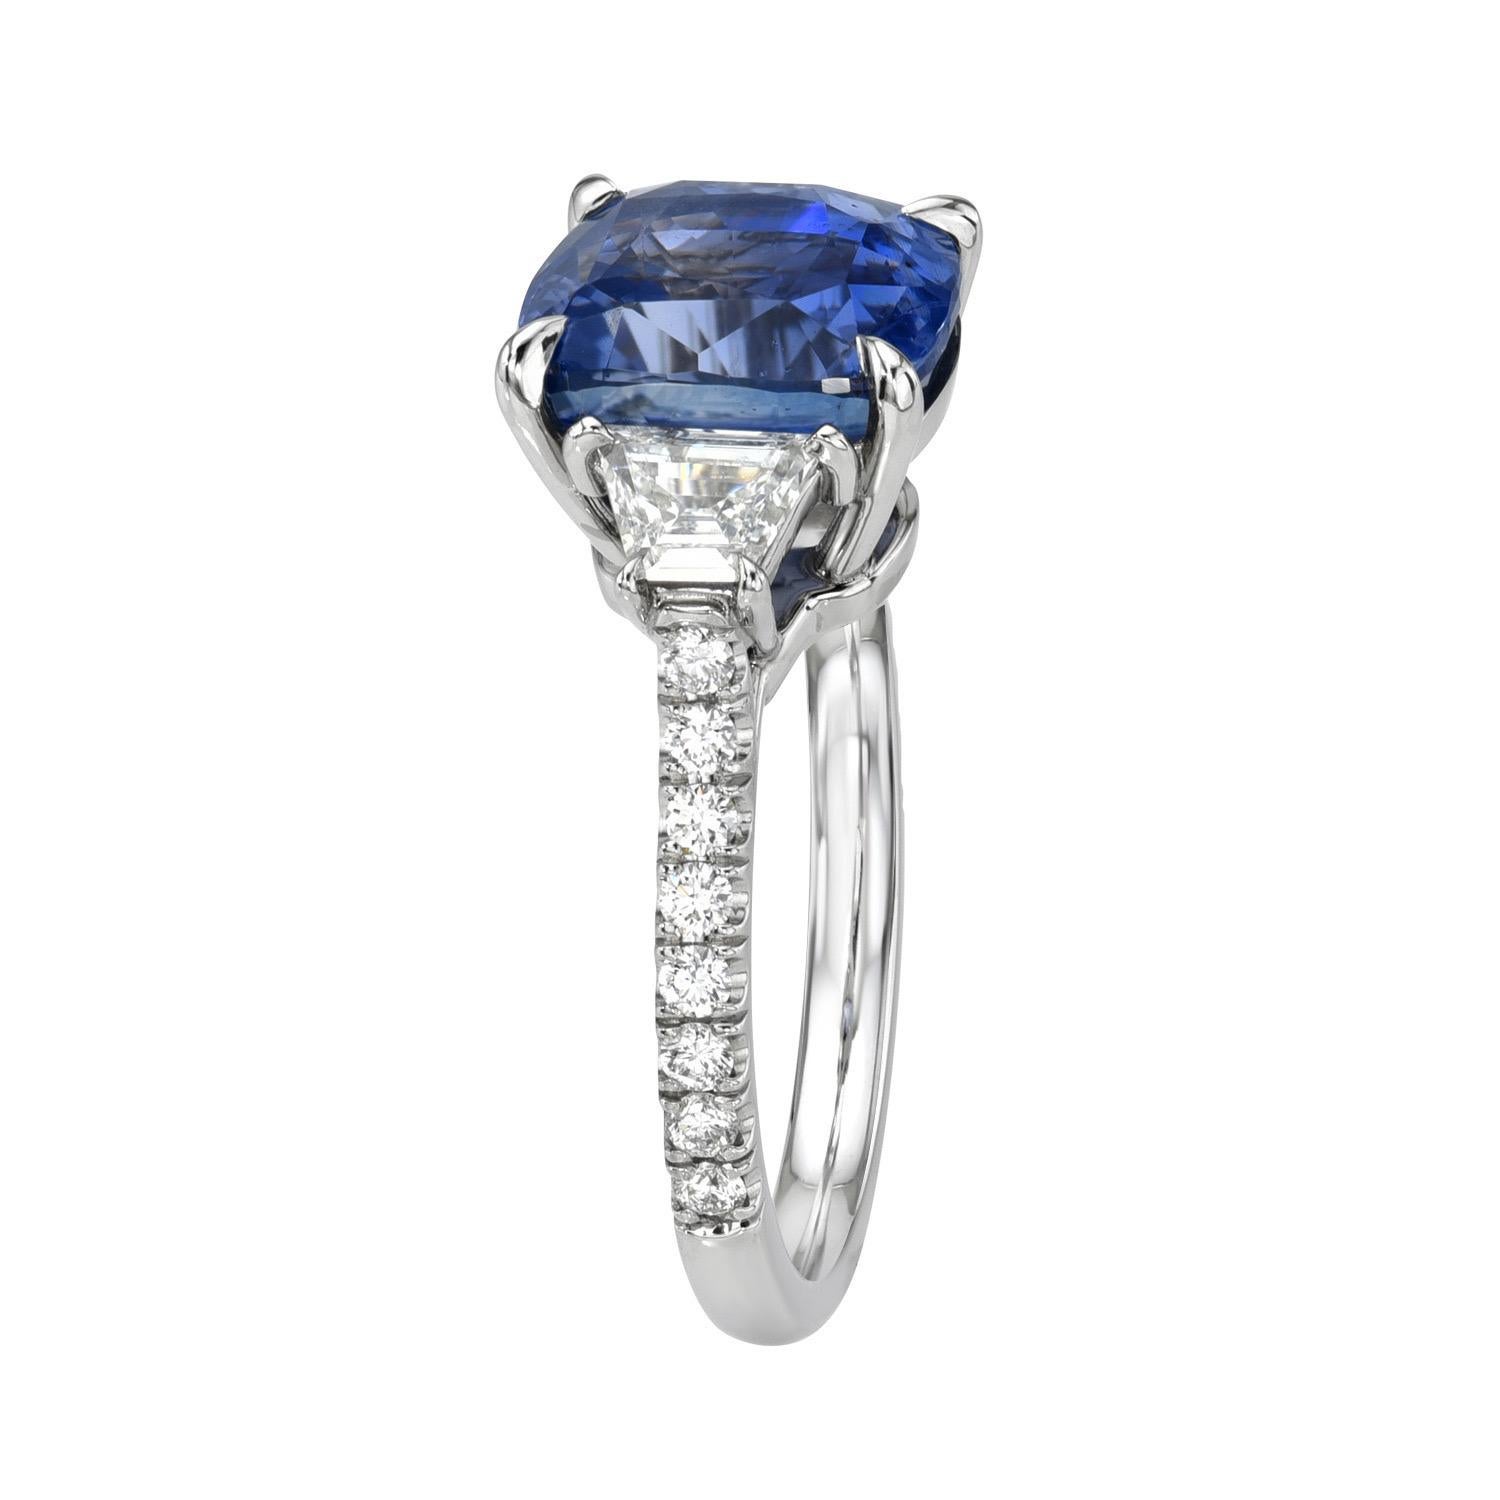 Prächtiger Ring aus Platin mit 5,59 Karat ungeheiztem blauen Ceylon-Saphir und drei Steinen, flankiert von einem Paar trapezförmiger Diamanten von 0,45 Karat F/SI1 und insgesamt 0,25 Karat runden Brillanten.
Ring Größe 6. Die Größenänderung ist auf